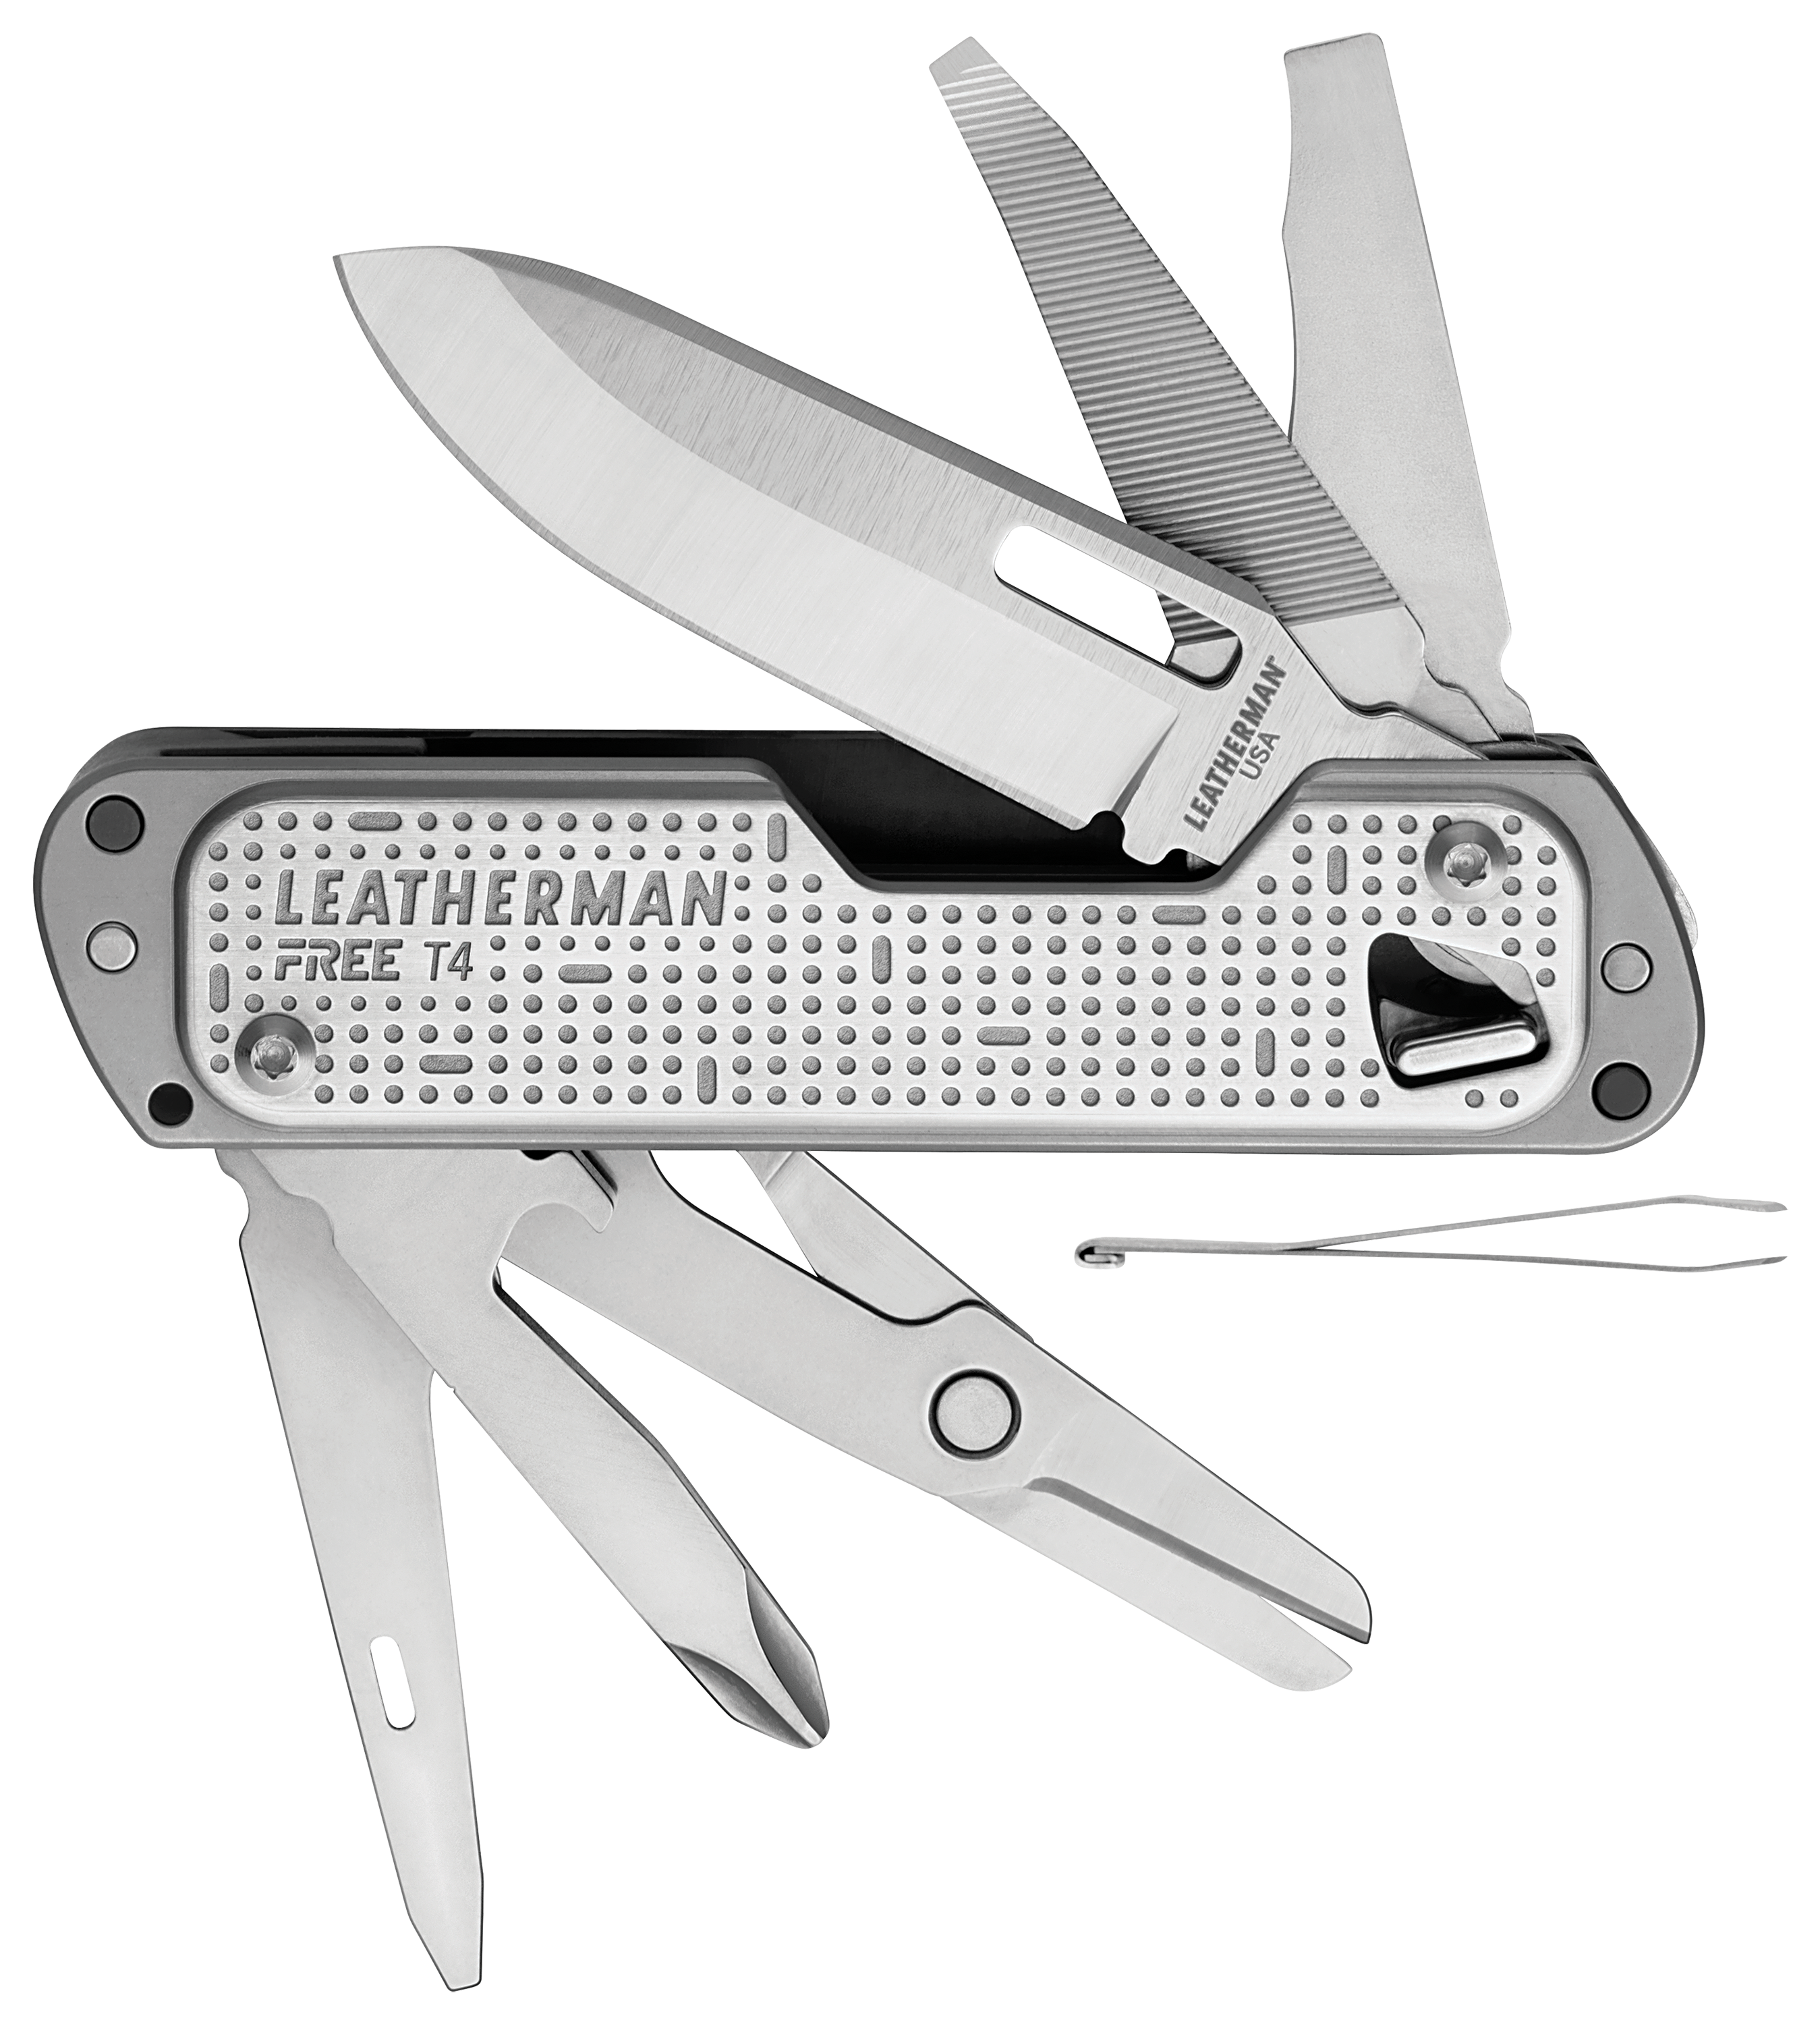 Leatherman FREE T4 Multi-Tool Pocket Knife